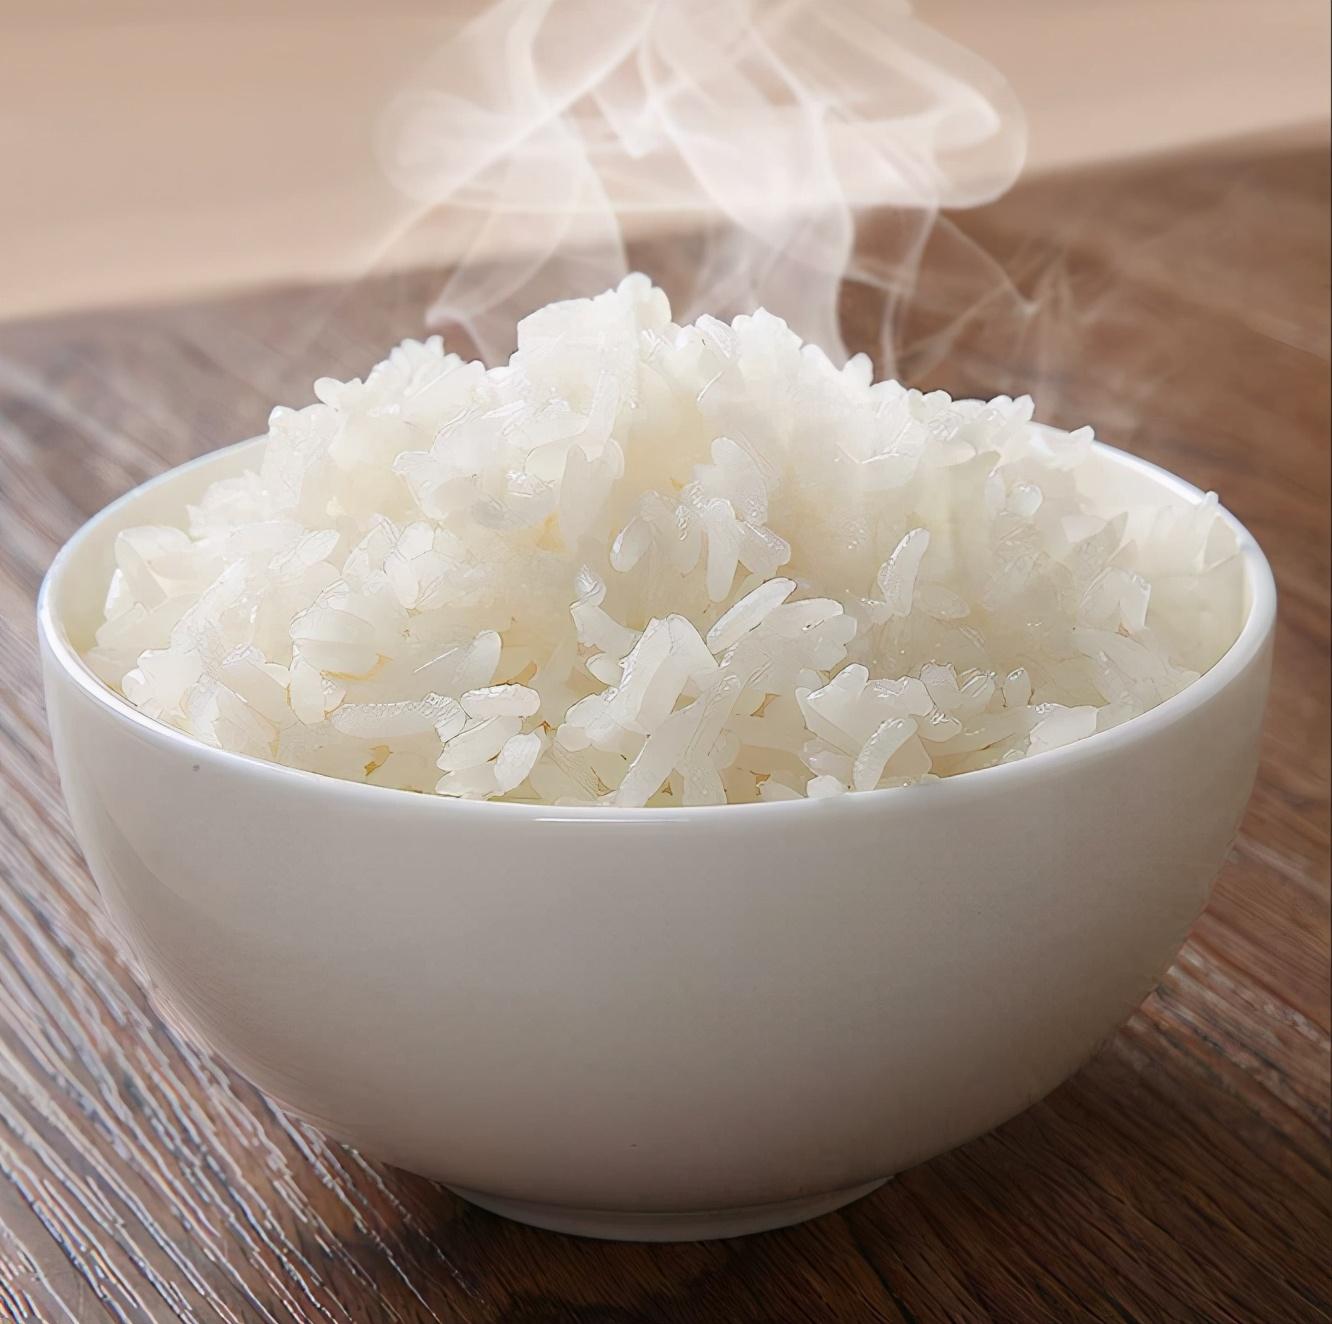 水稻做成的食物图片图片